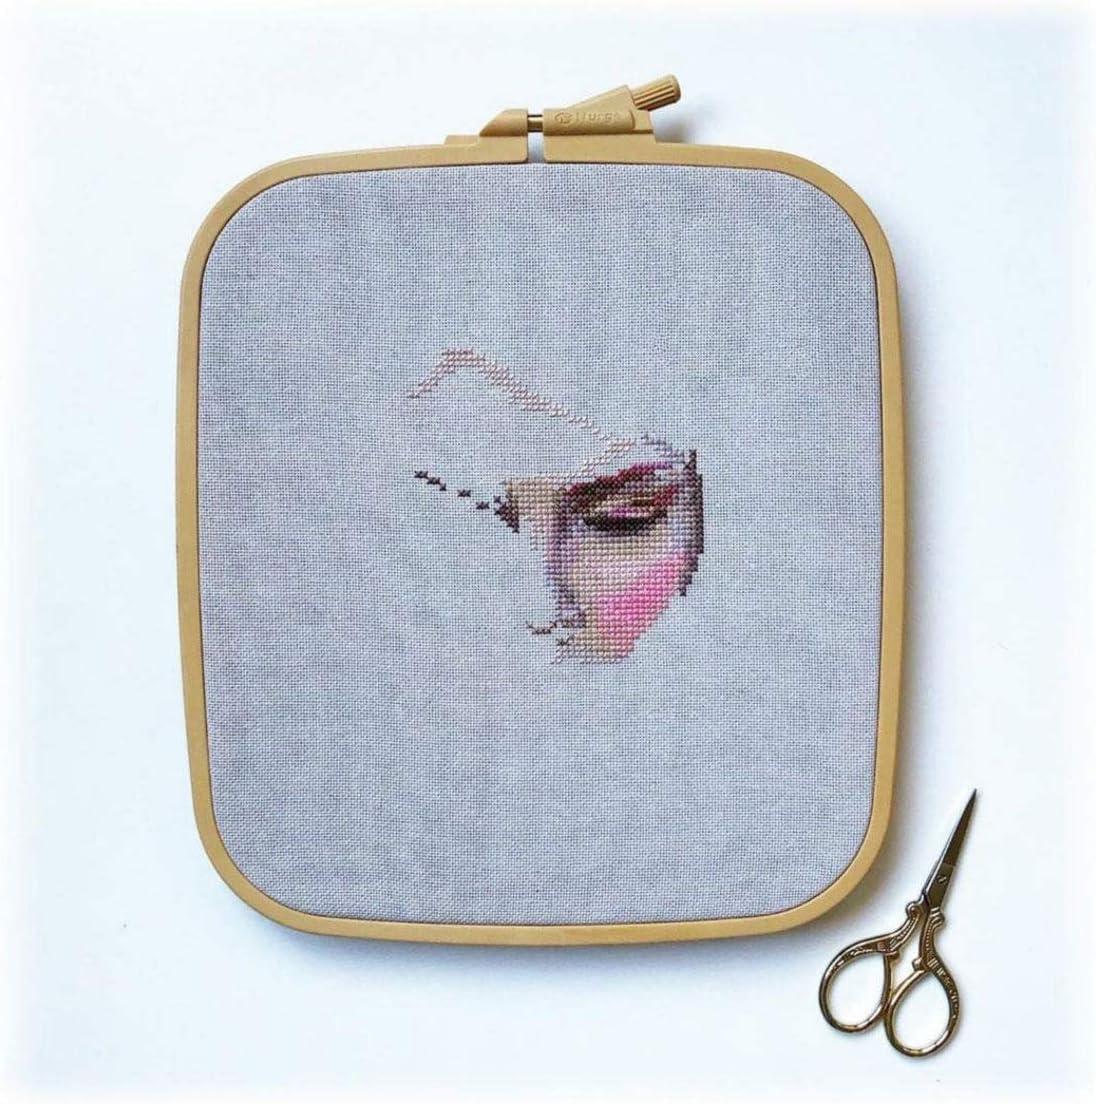 Nurge plastic square embroidery hoop